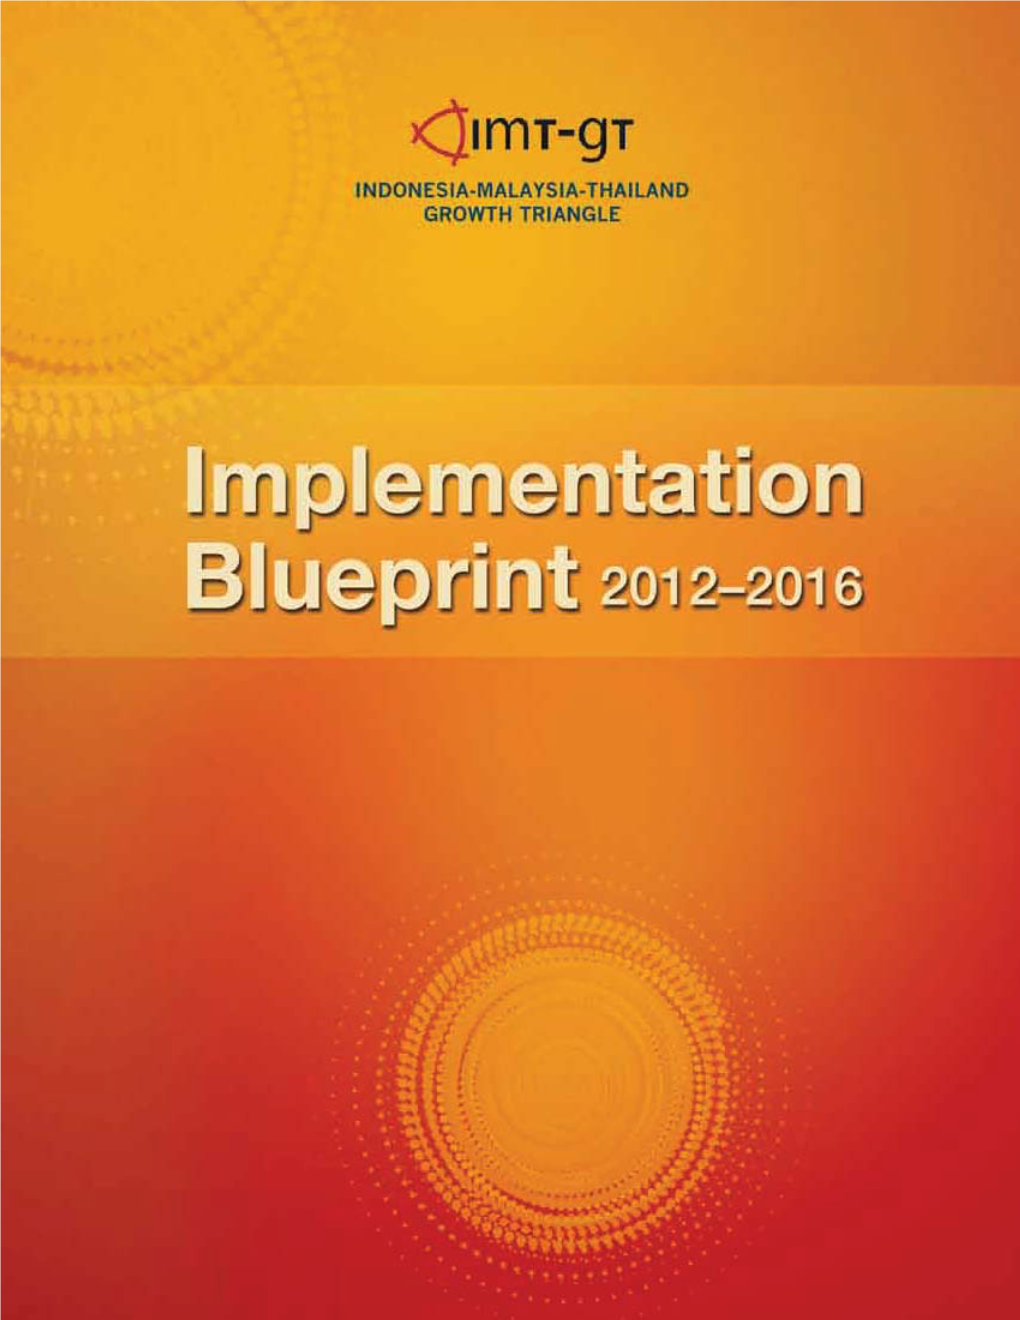 (IMT-GT) Implementation Blueprint 2012-2016